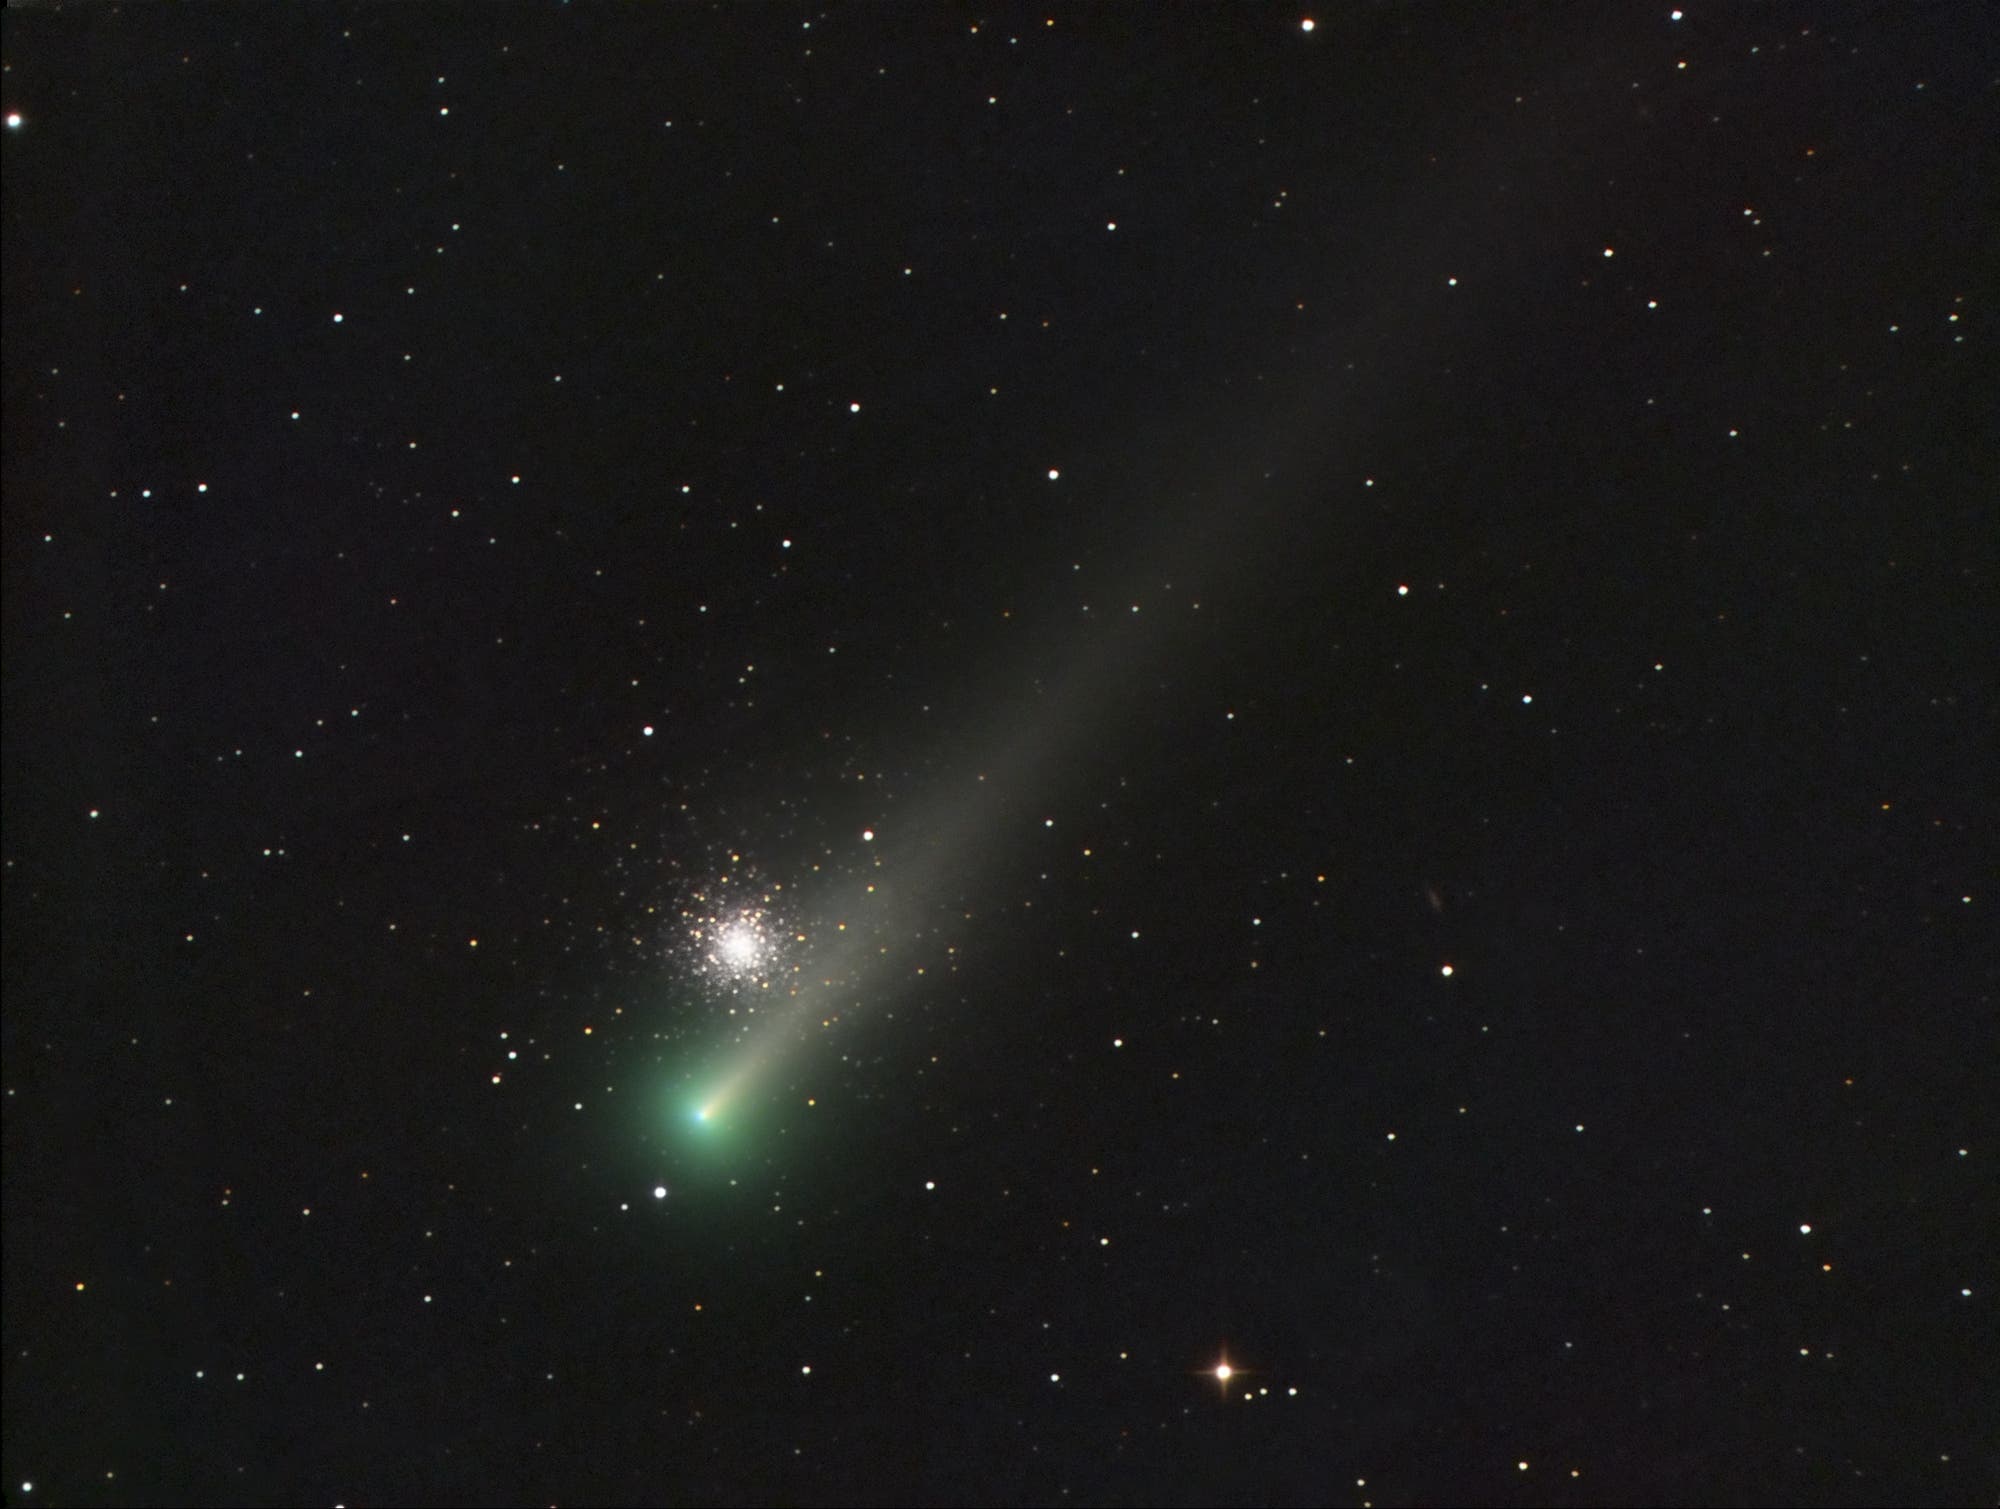 Comet C/2021 A1 (Leonard) and globular cluster Messier 3